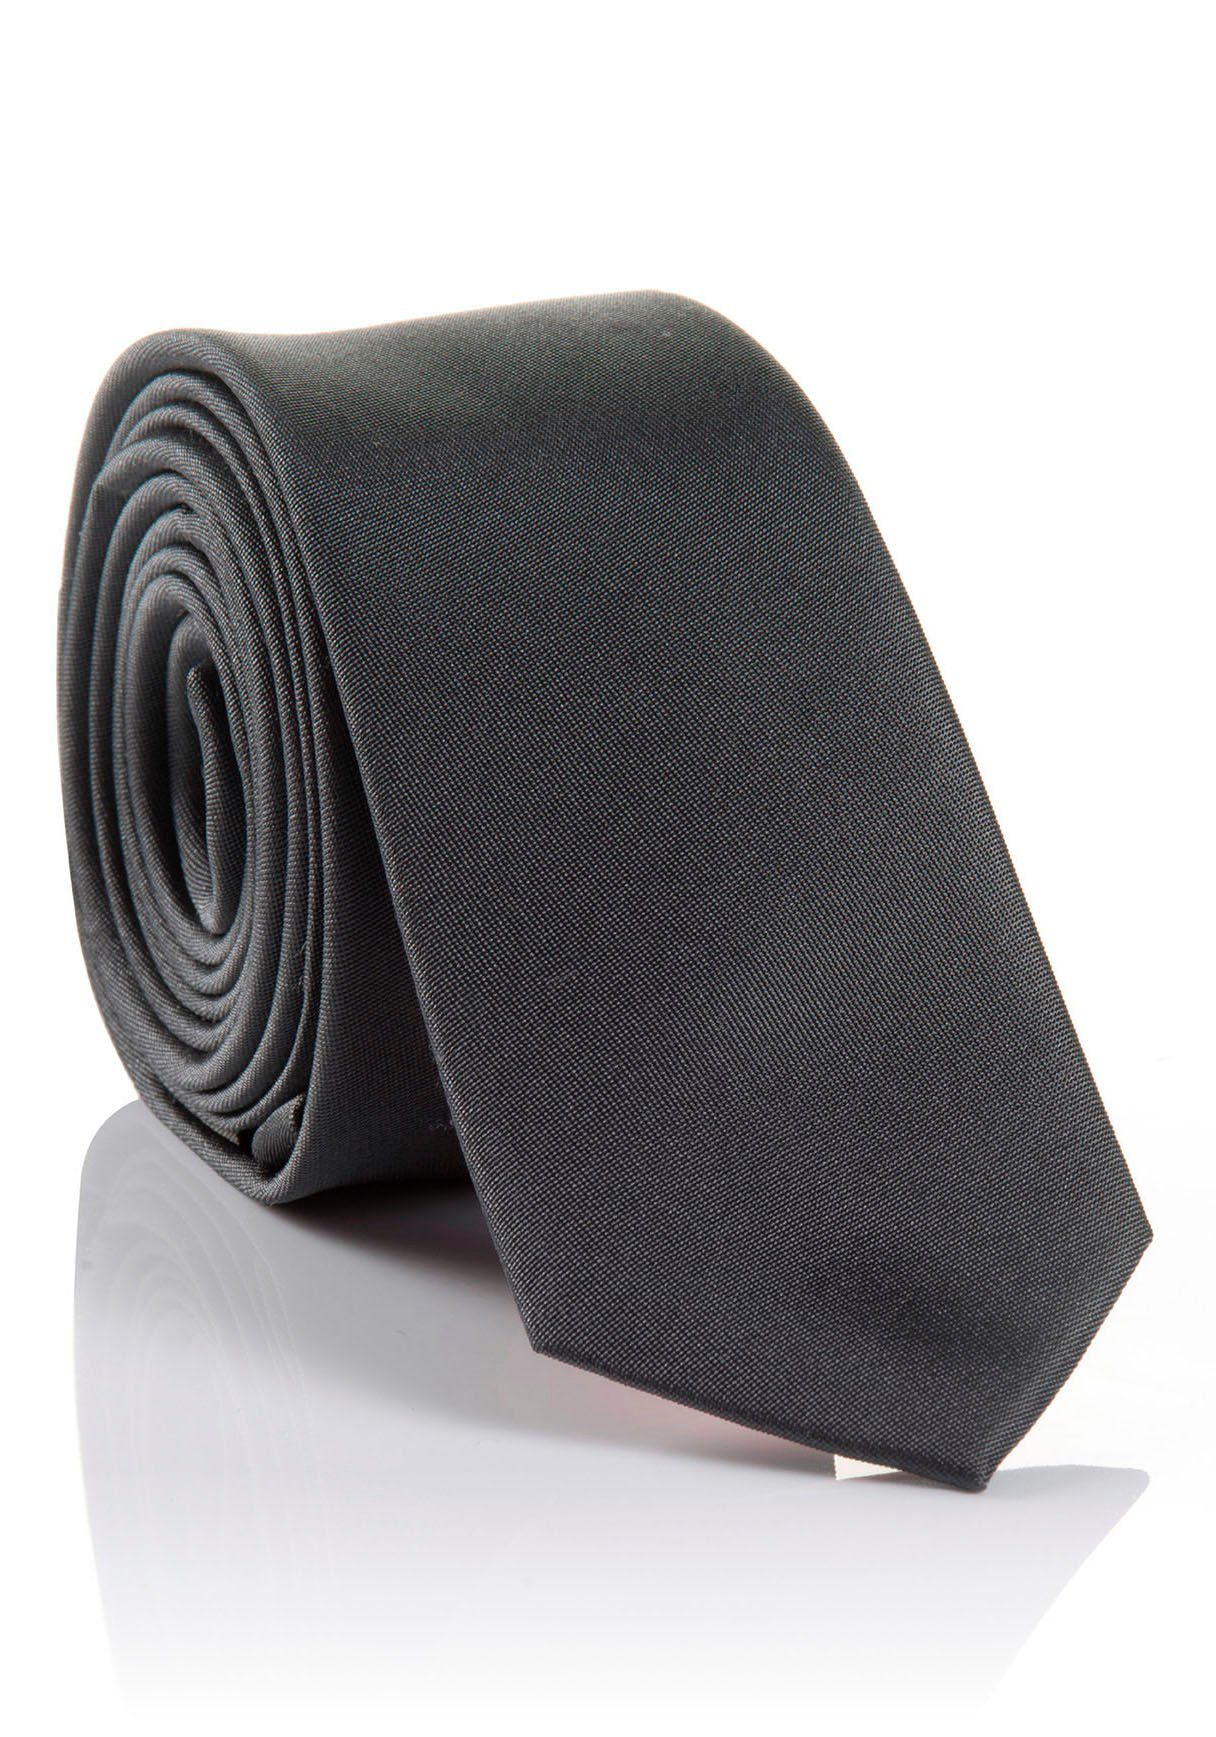 Krawatte Tragekomfort Seidenkrawatte MONTI LORENZO hohem mit grey Hochwertig verarbeitete